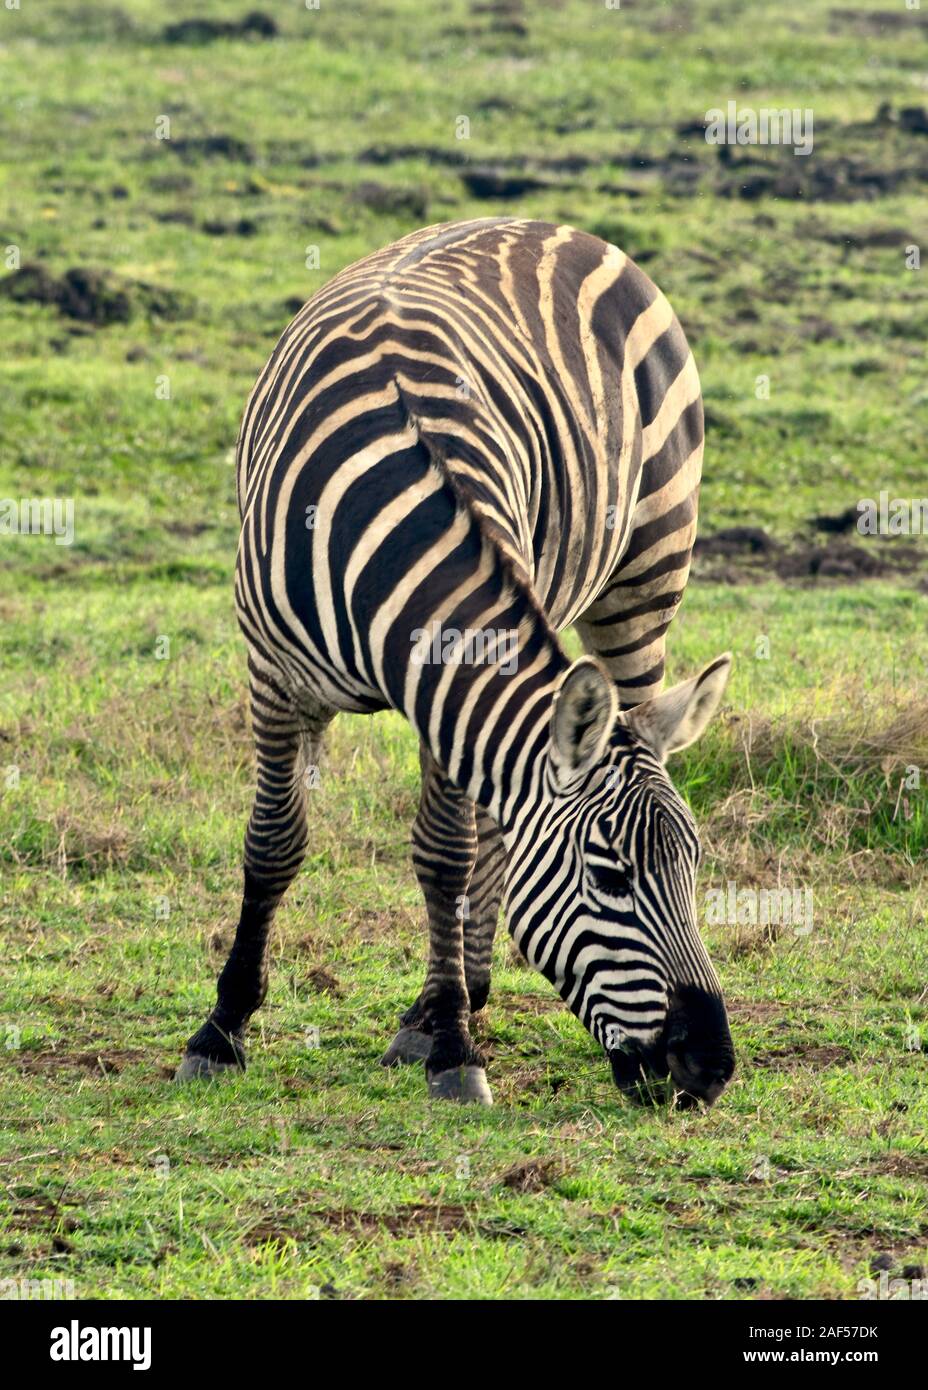 Eine einsame Zebra Schürfwunden auf einem Amboseli Grünland mit seiner Vorderseite aus, um die Kamera und den Körper bis in den Rücken. (Equus burchelli) Stockfoto